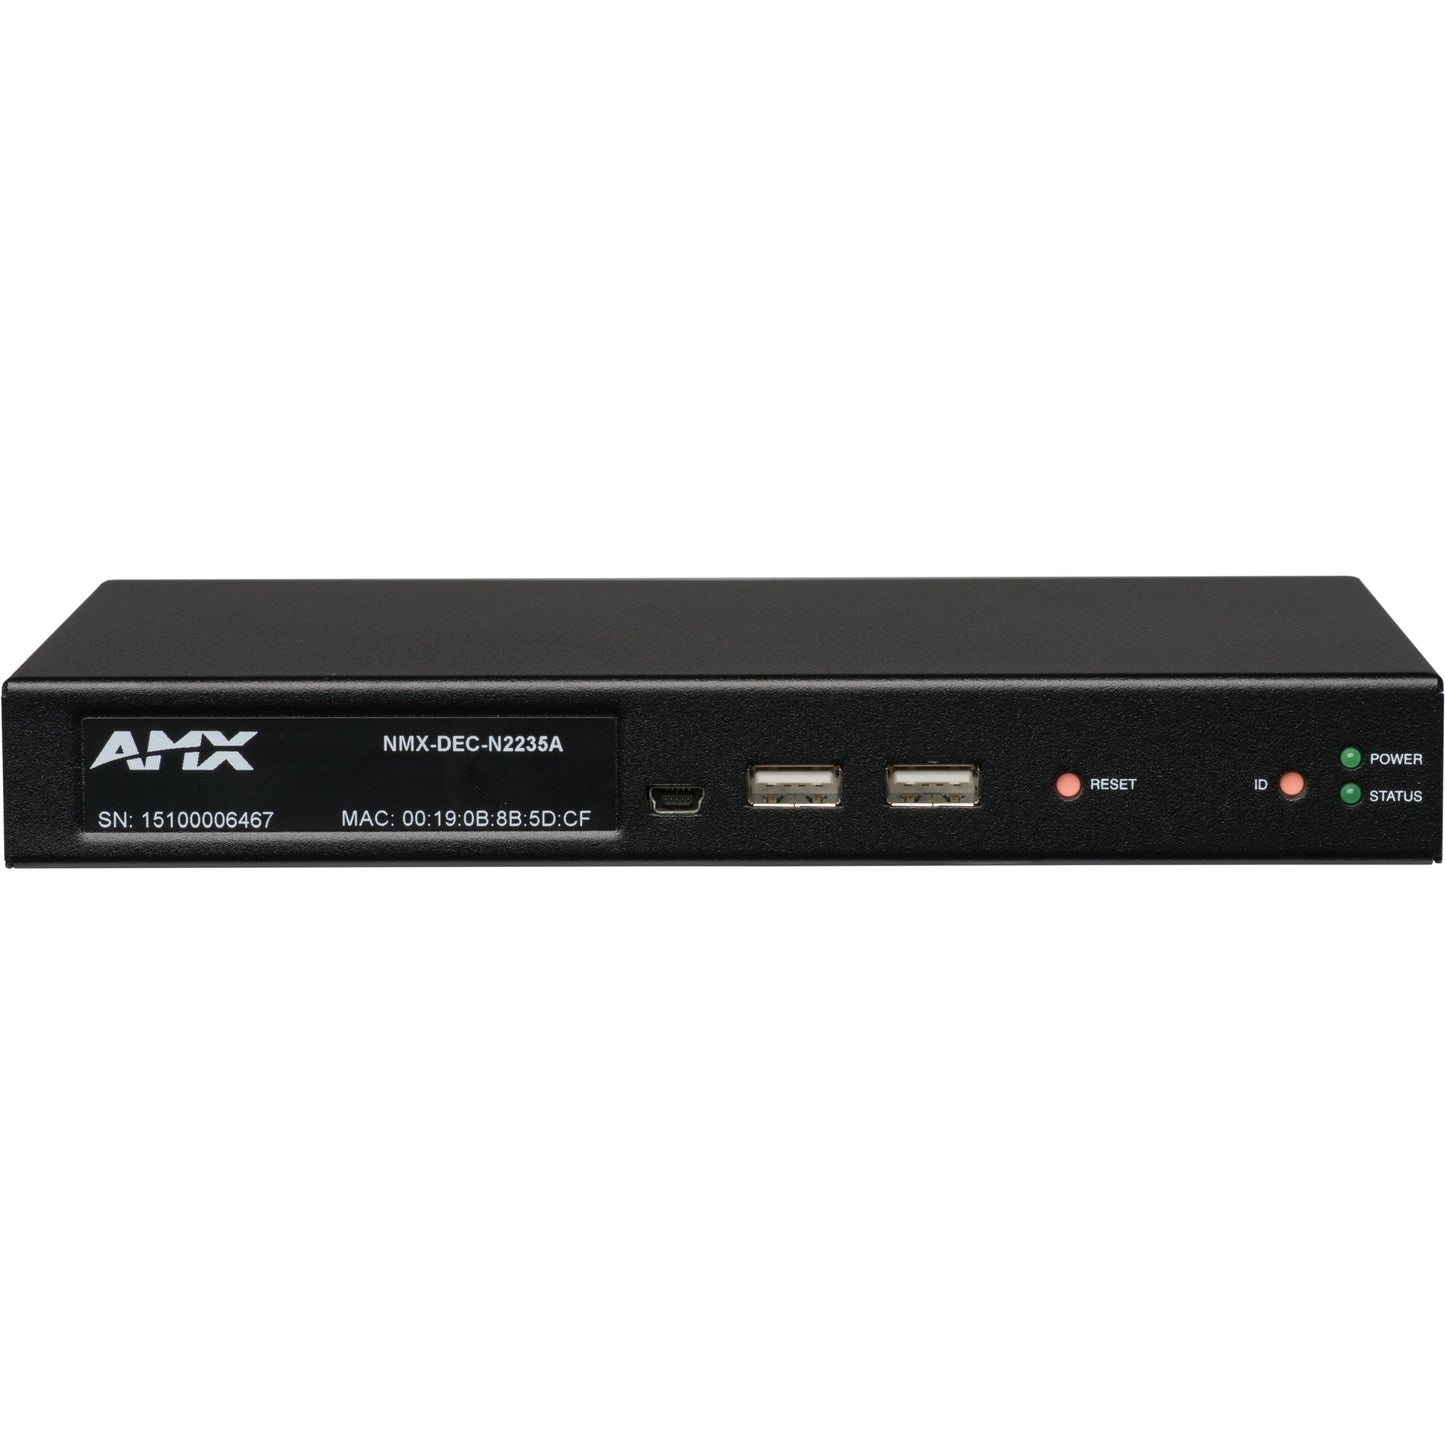 AMX NMX-DEC-N2235A Video Decoder